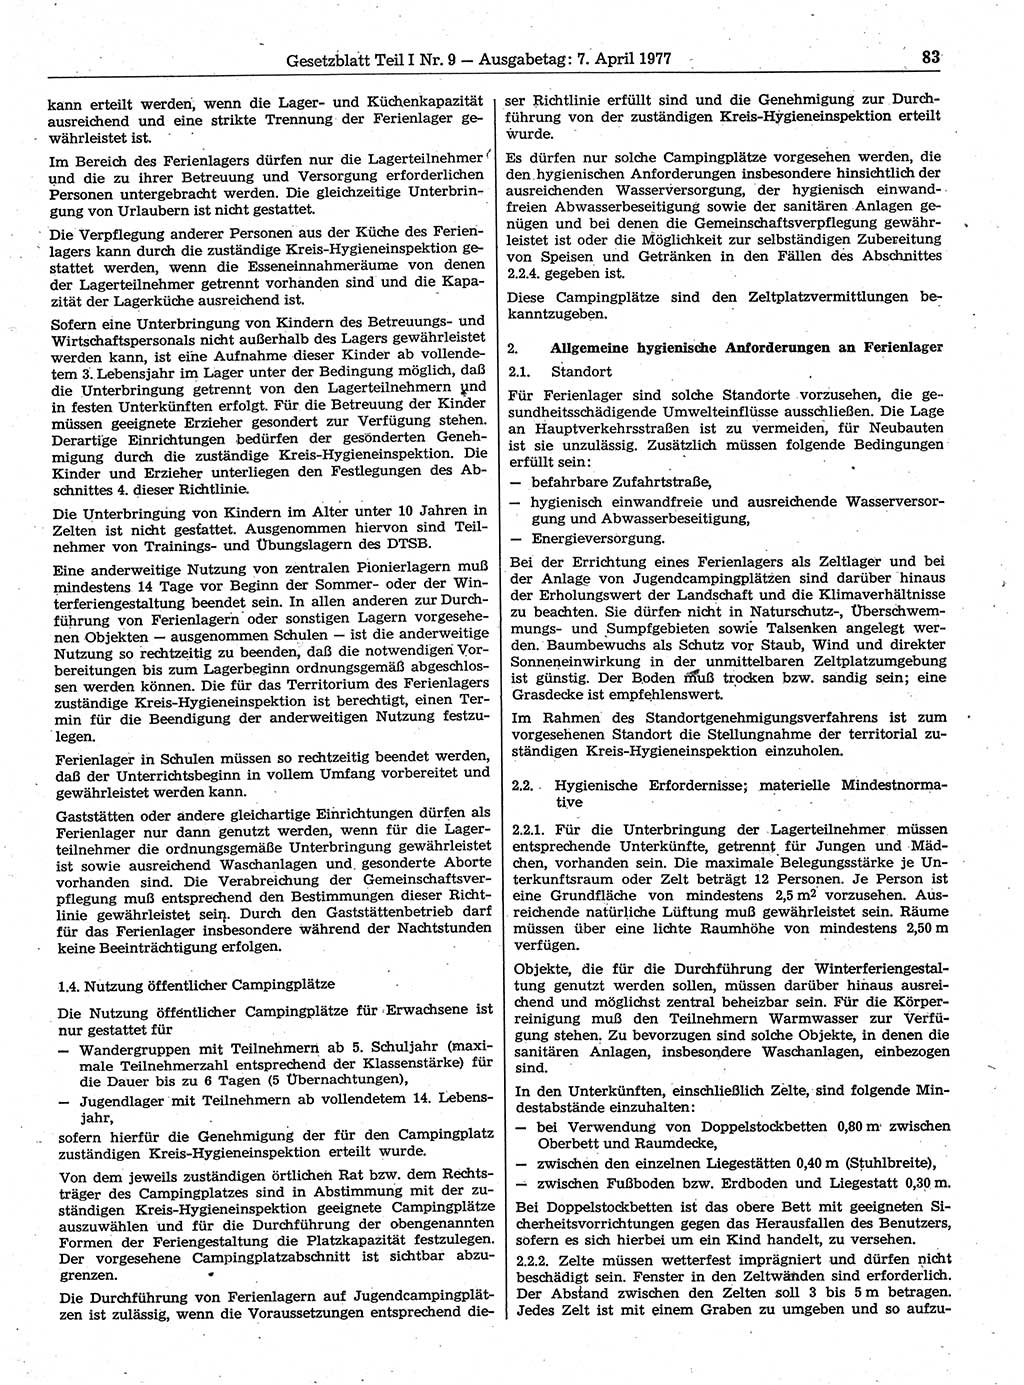 Gesetzblatt (GBl.) der Deutschen Demokratischen Republik (DDR) Teil Ⅰ 1977, Seite 83 (GBl. DDR Ⅰ 1977, S. 83)